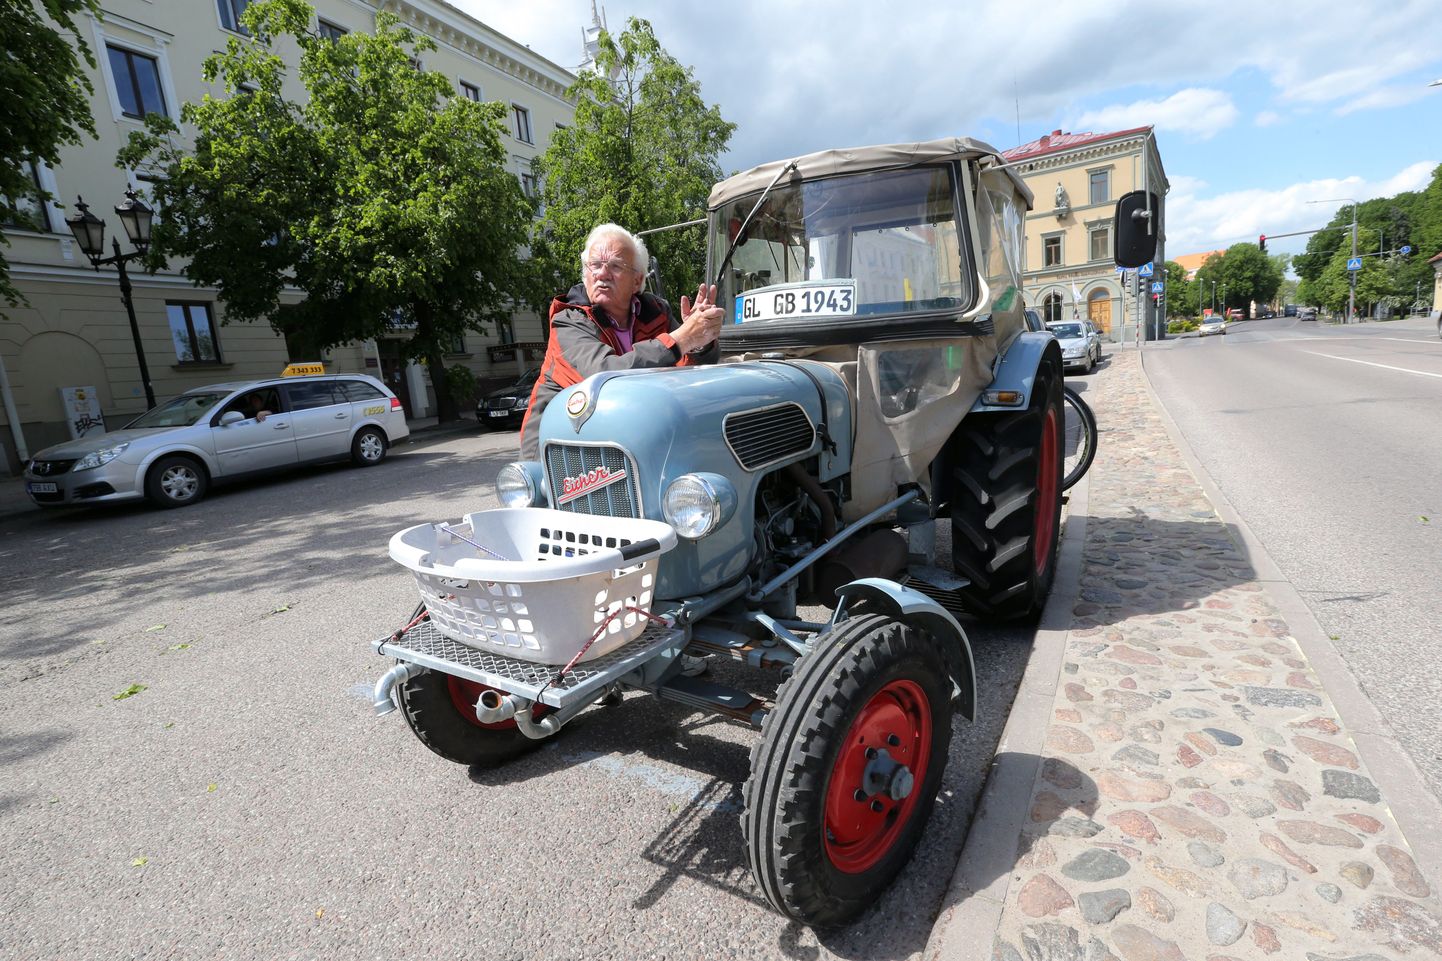 Saksamaalt Kölni lähedalt pärit Günther Bornefeld on olnud juba viis nädalat teel oma pisikese traktori ja vagunelamuga. Täna alustas ta sõitu koju tagasi.